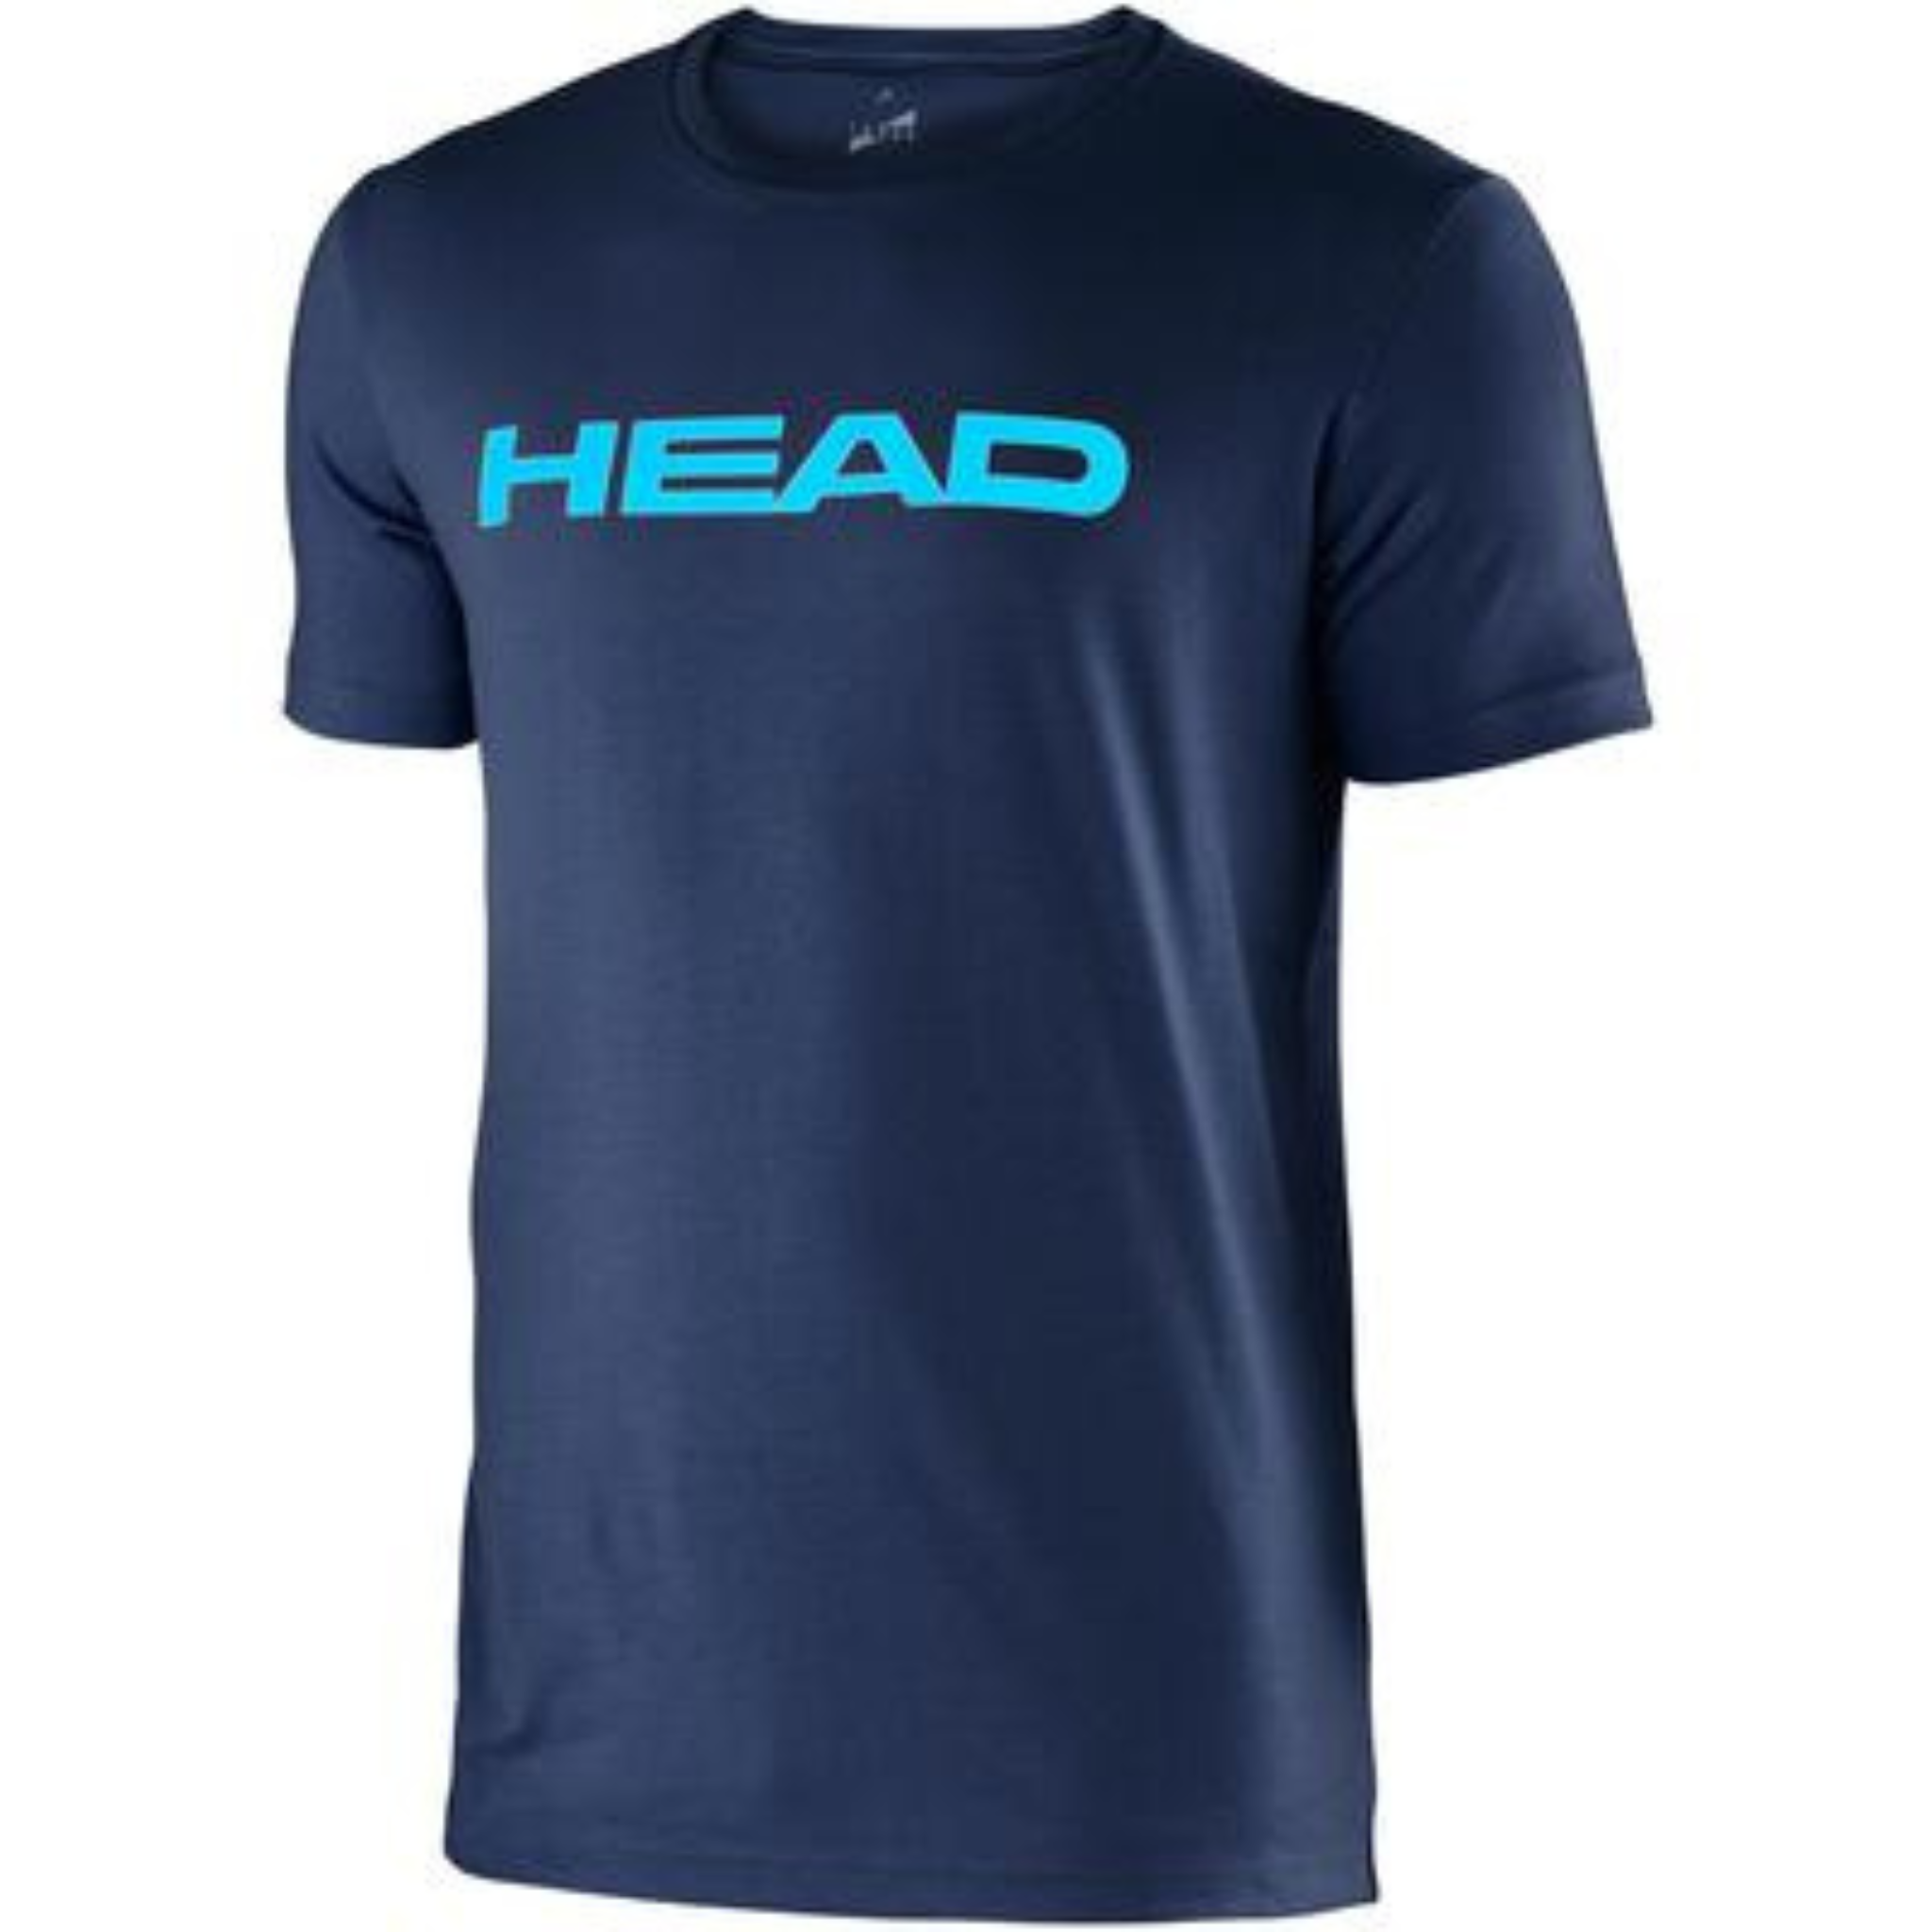 HEAD IVAN Jr T-shirt - Navy Aqua